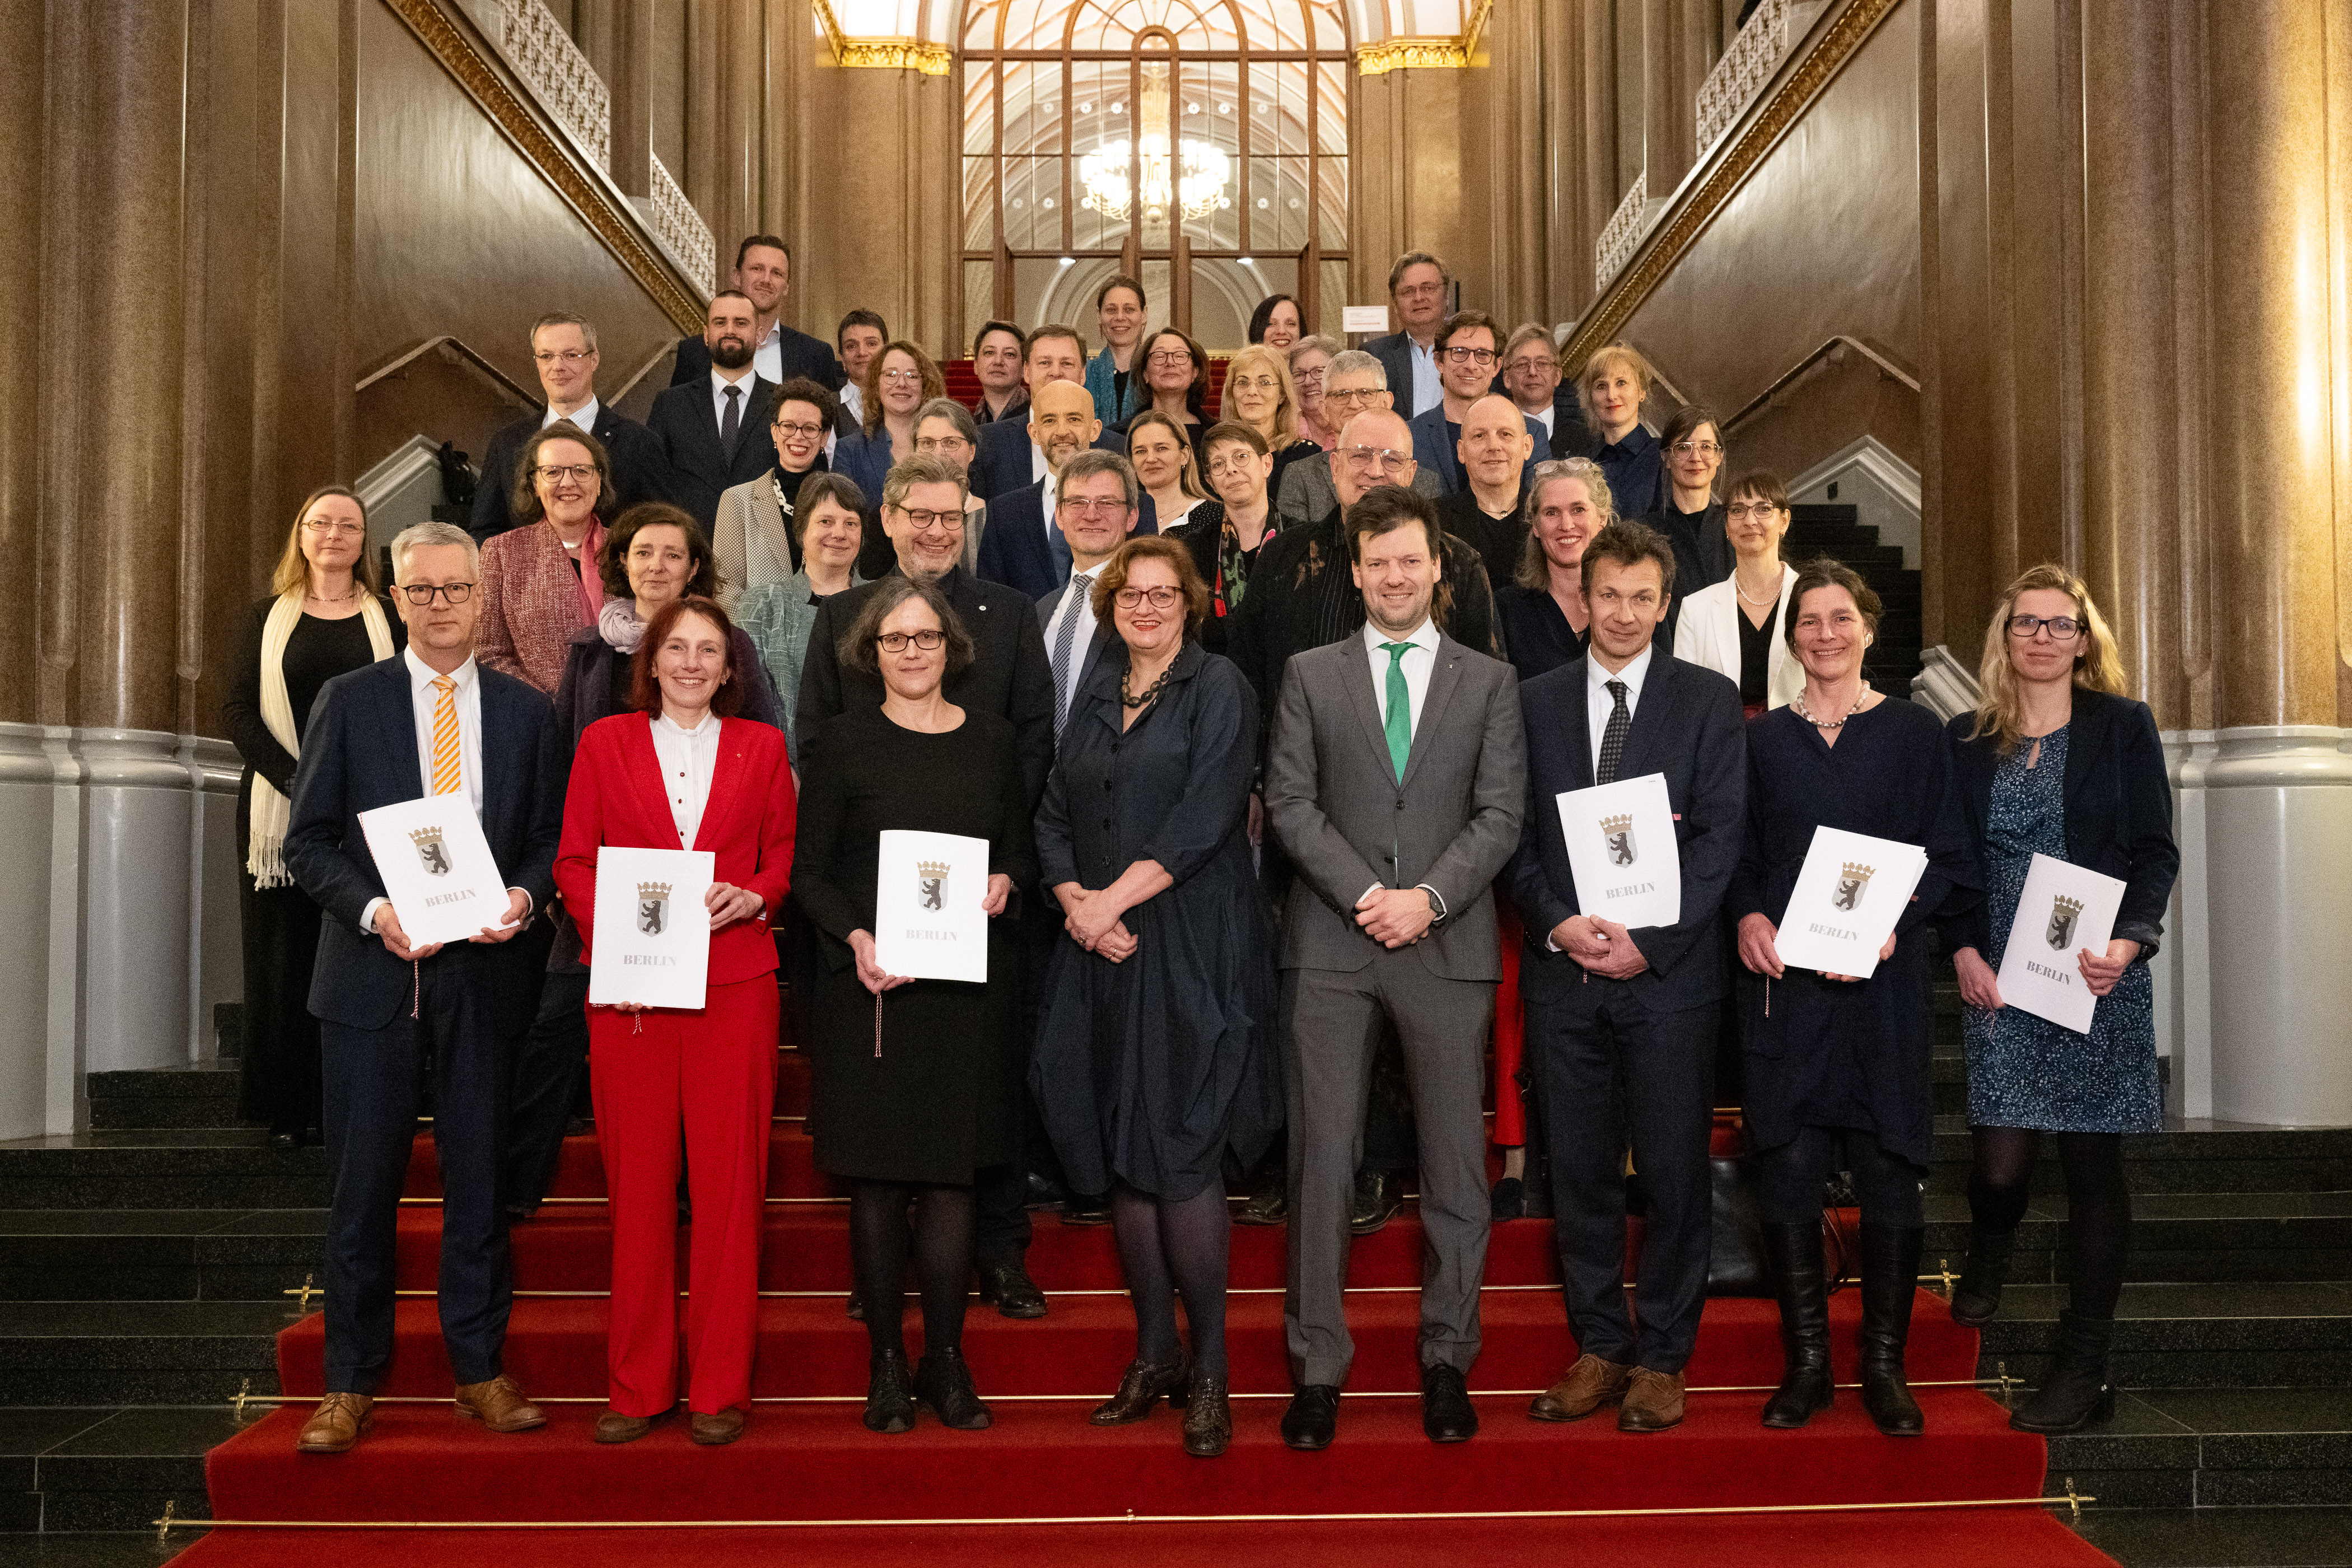 Gruppenfoto mit den Präsidentinnen und Präsidenten und Rektorinnen und Rektoren der Berliner Universitäten und Hochschulen sowie Wissenschaftssenatorin Dr. Ina Czyborra und ihrem Team. 